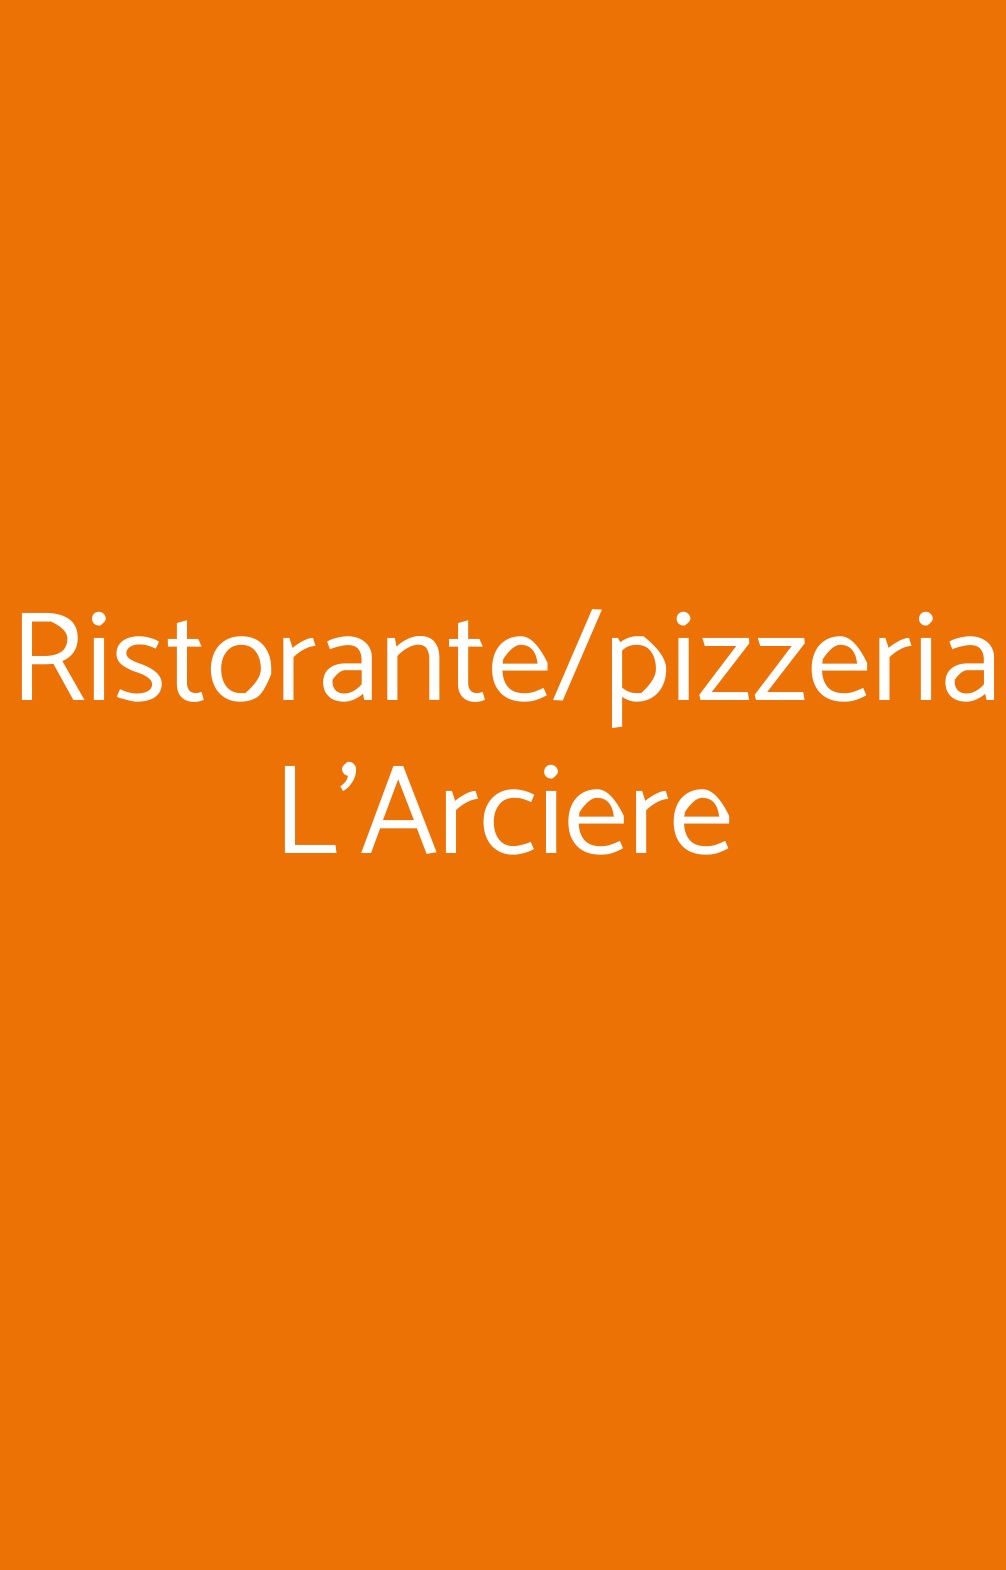 Ristorante/pizzeria L'Arciere Pisa menù 1 pagina